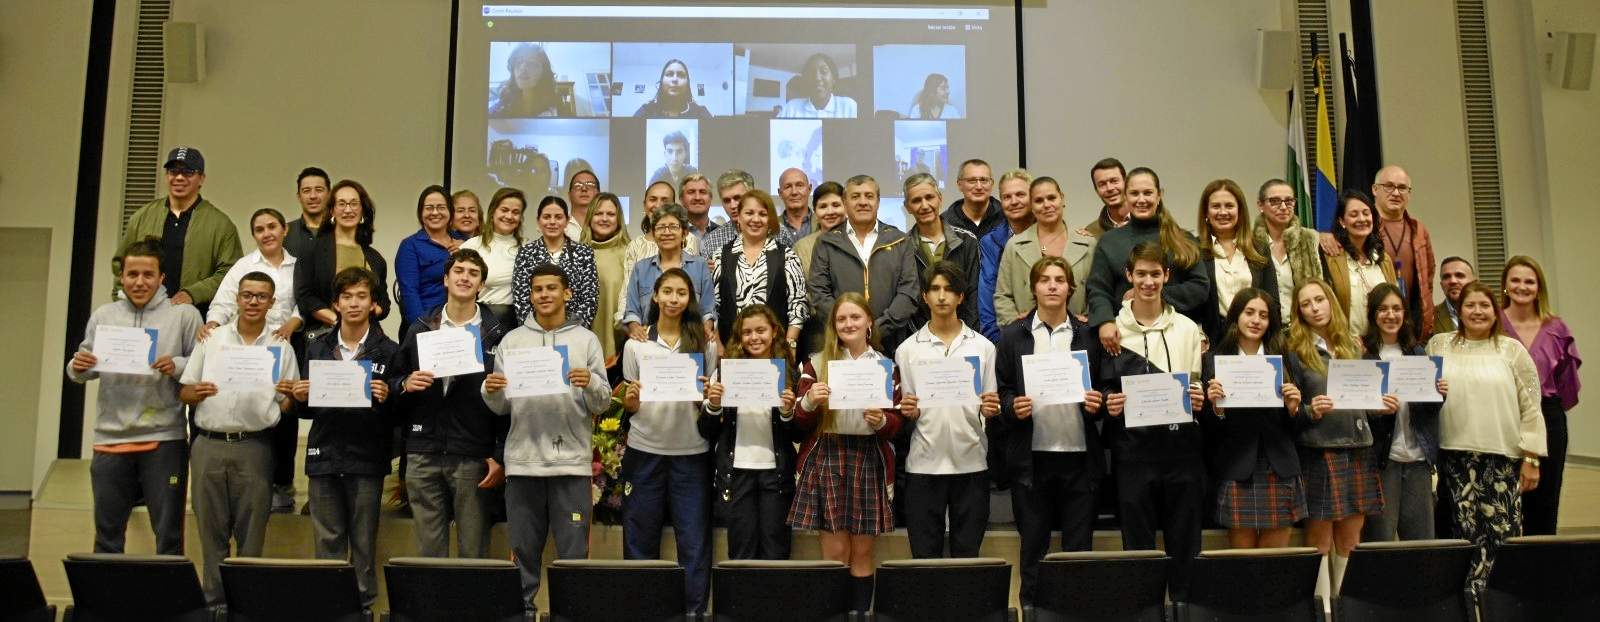 Foto | Cortesía UAM | LA PATRIA Grupo de estudiantes homenajeados junto a su padres de familia y directivos de la UAM.